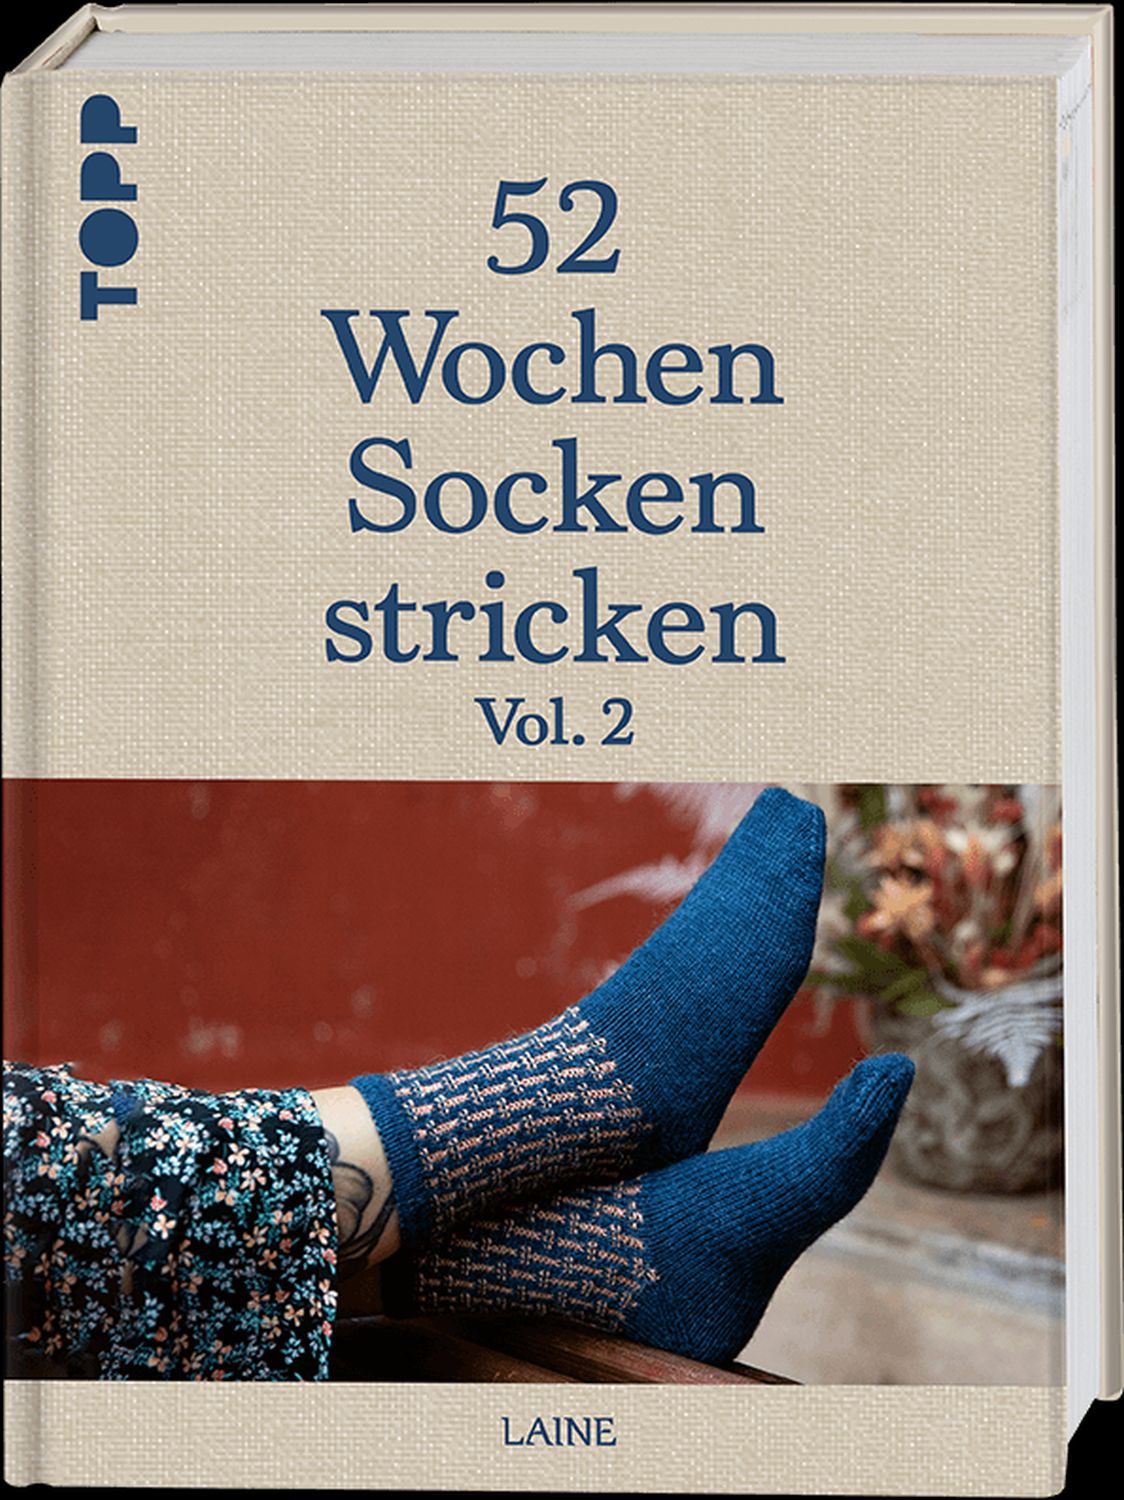 52 weeks of knitting socks Vol. 2